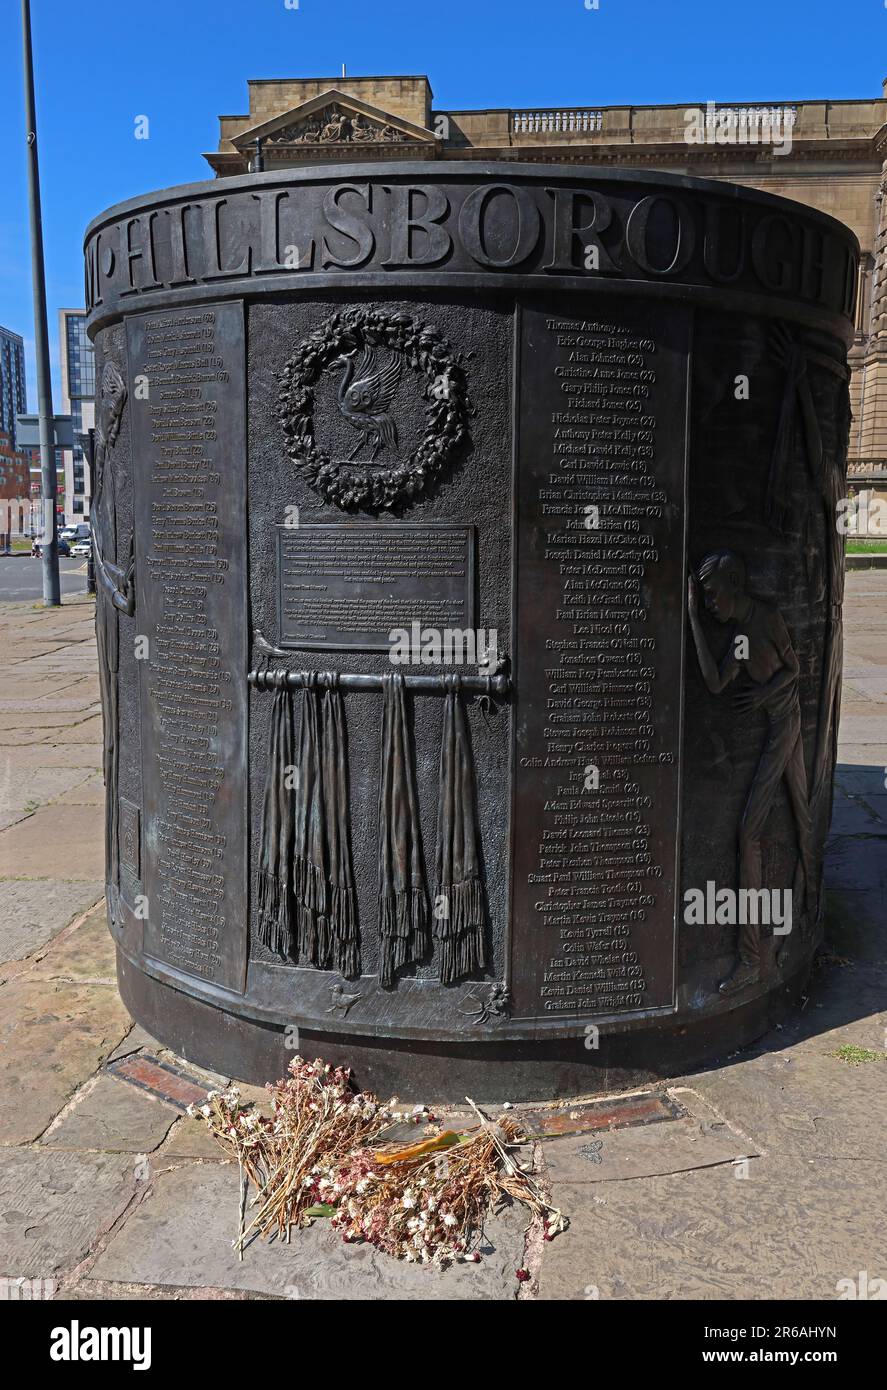 Hillsborough Monument Memorial, für die 96, Tom Murphy, St. John's Gardens, Old Haymarket, Liverpool, Merseyside, England, Vereinigtes Königreich, L1 6er Stockfoto